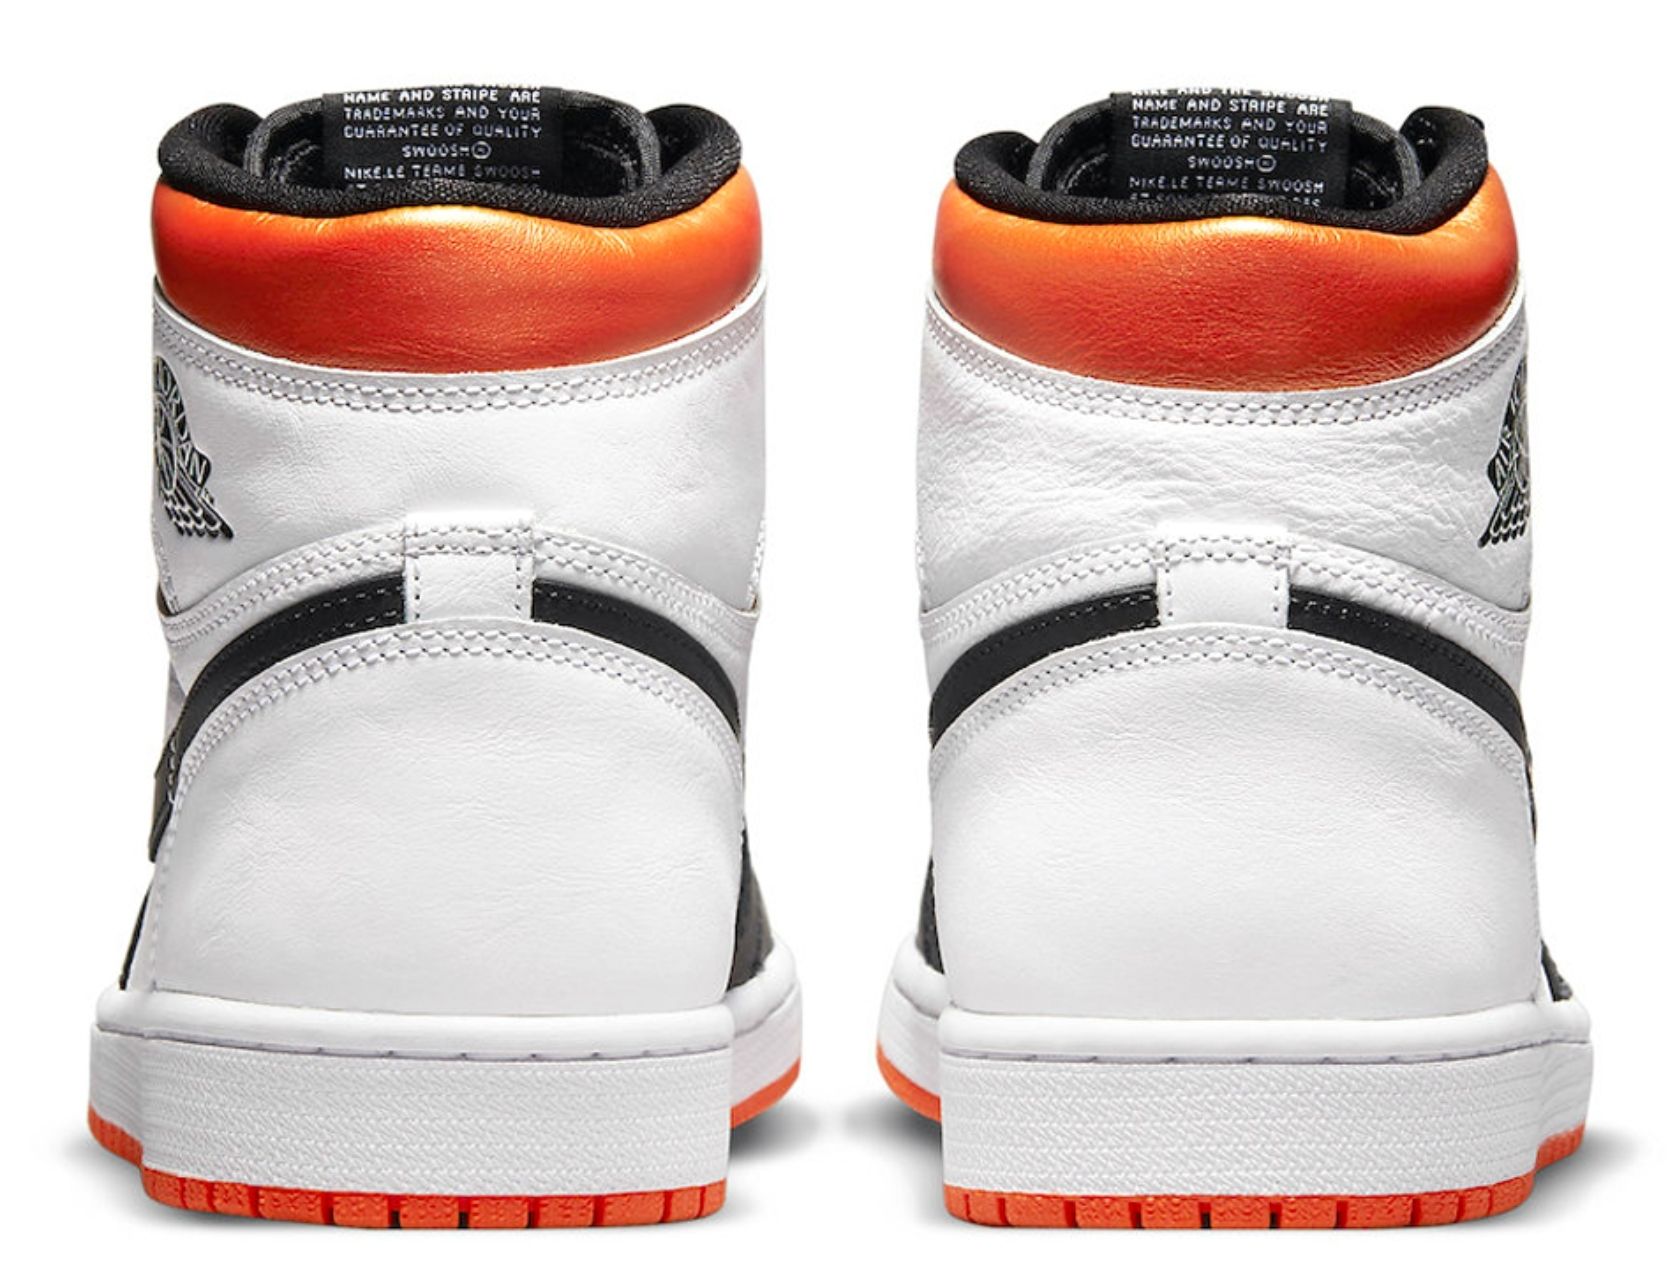 Air Jordan 1 Electro Orange